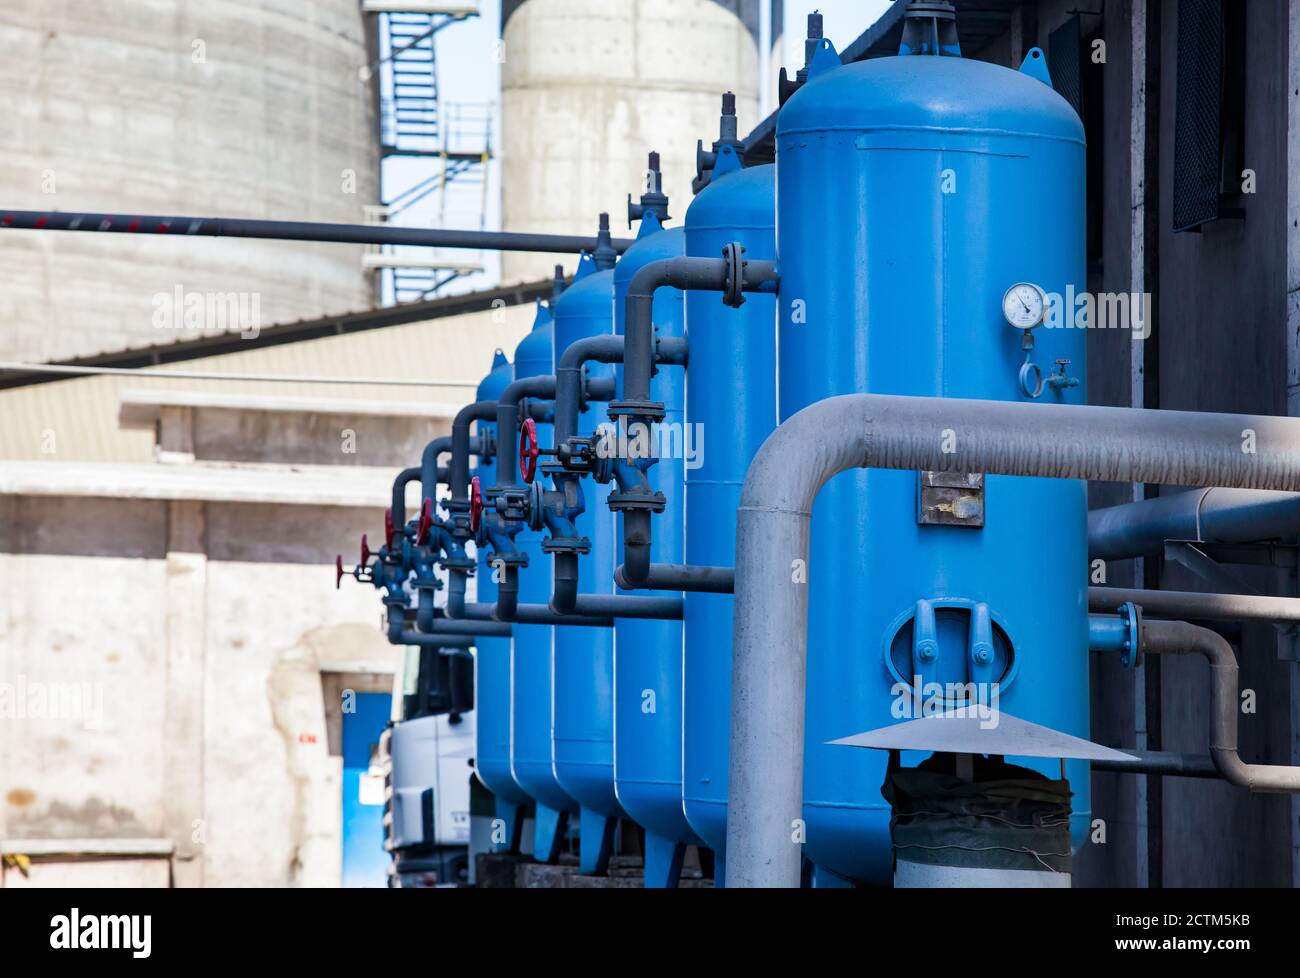 Mynaral/Kazakhstan - avril 23 2012 : usine de ciment Jambyl. Station de purification d'eau. Réservoirs de stockage d'eau bleus avec vannes et tuyaux. Banque D'Images